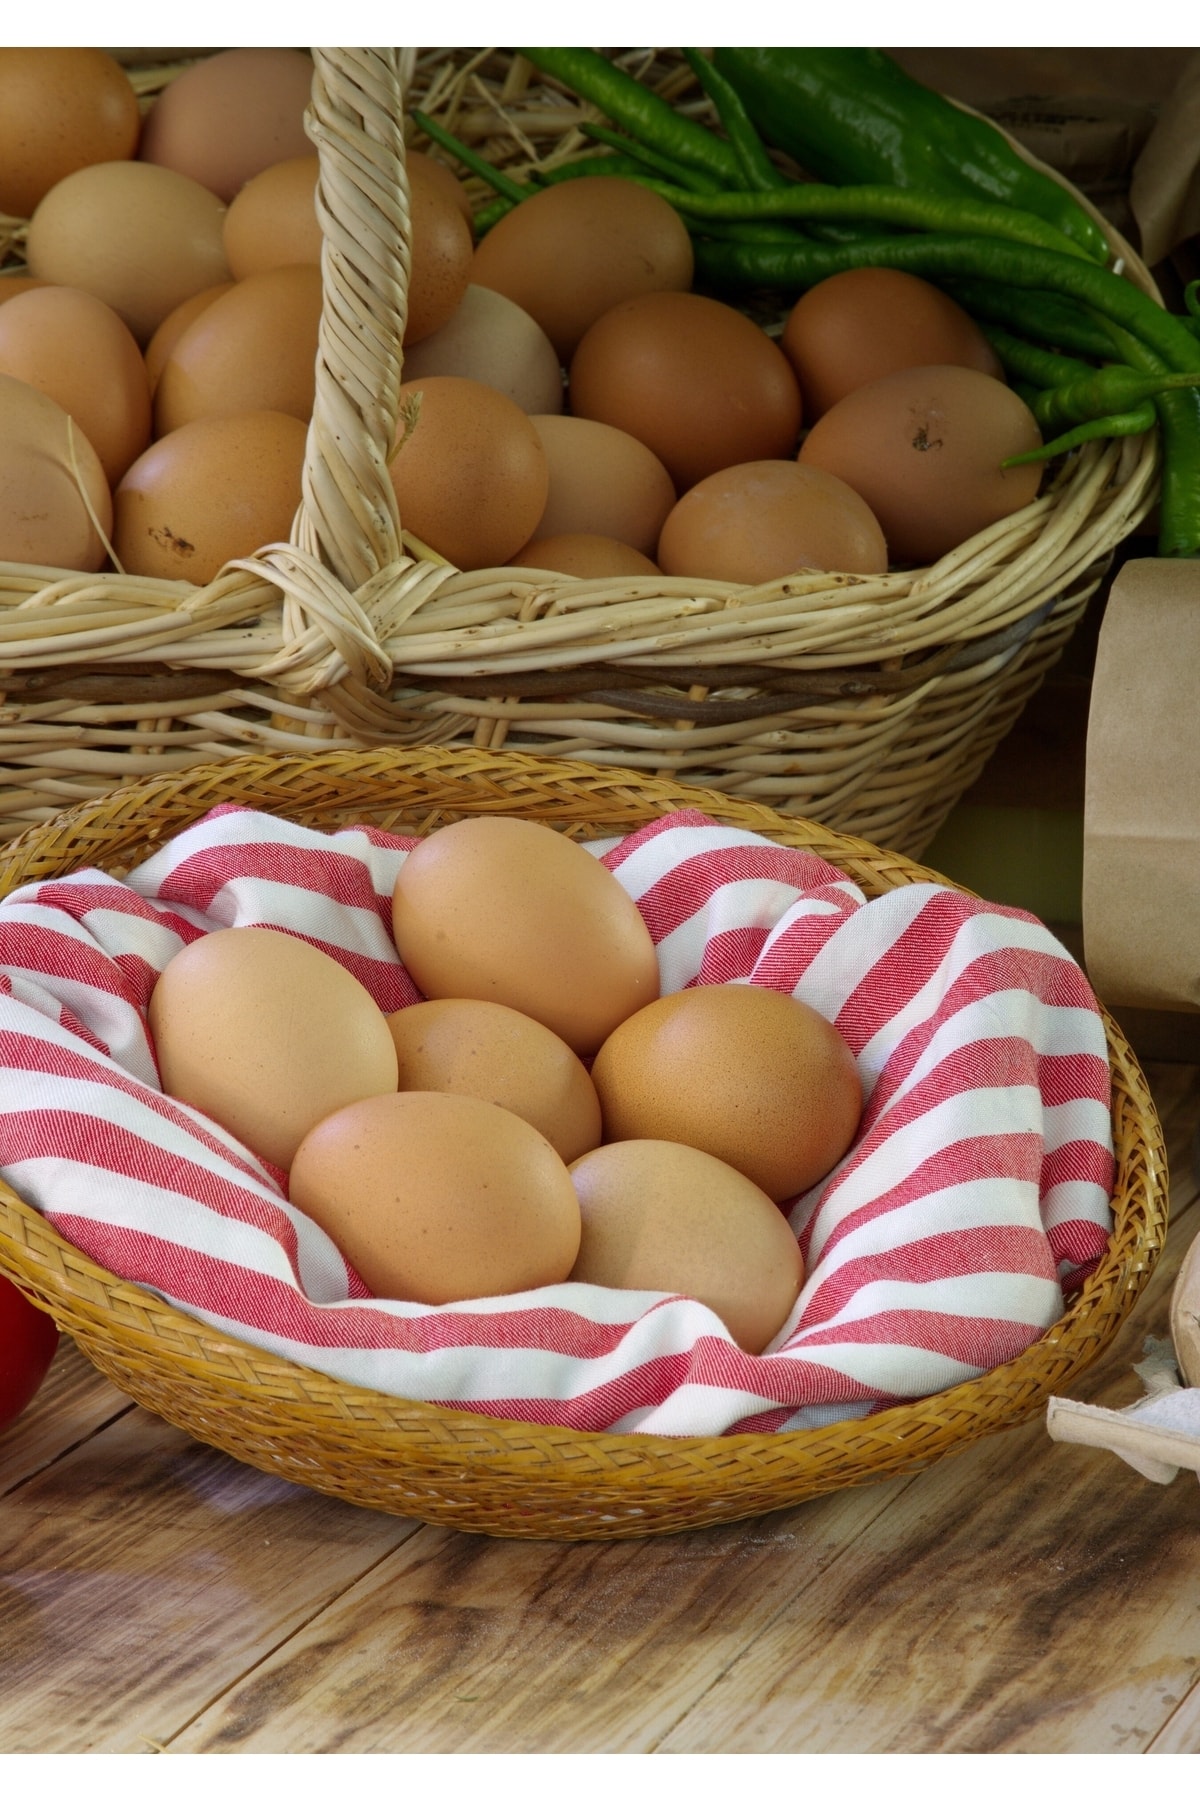 HASANBEY ÇİFTLİĞİ Doğal Köy Yumurtası 6 Adet